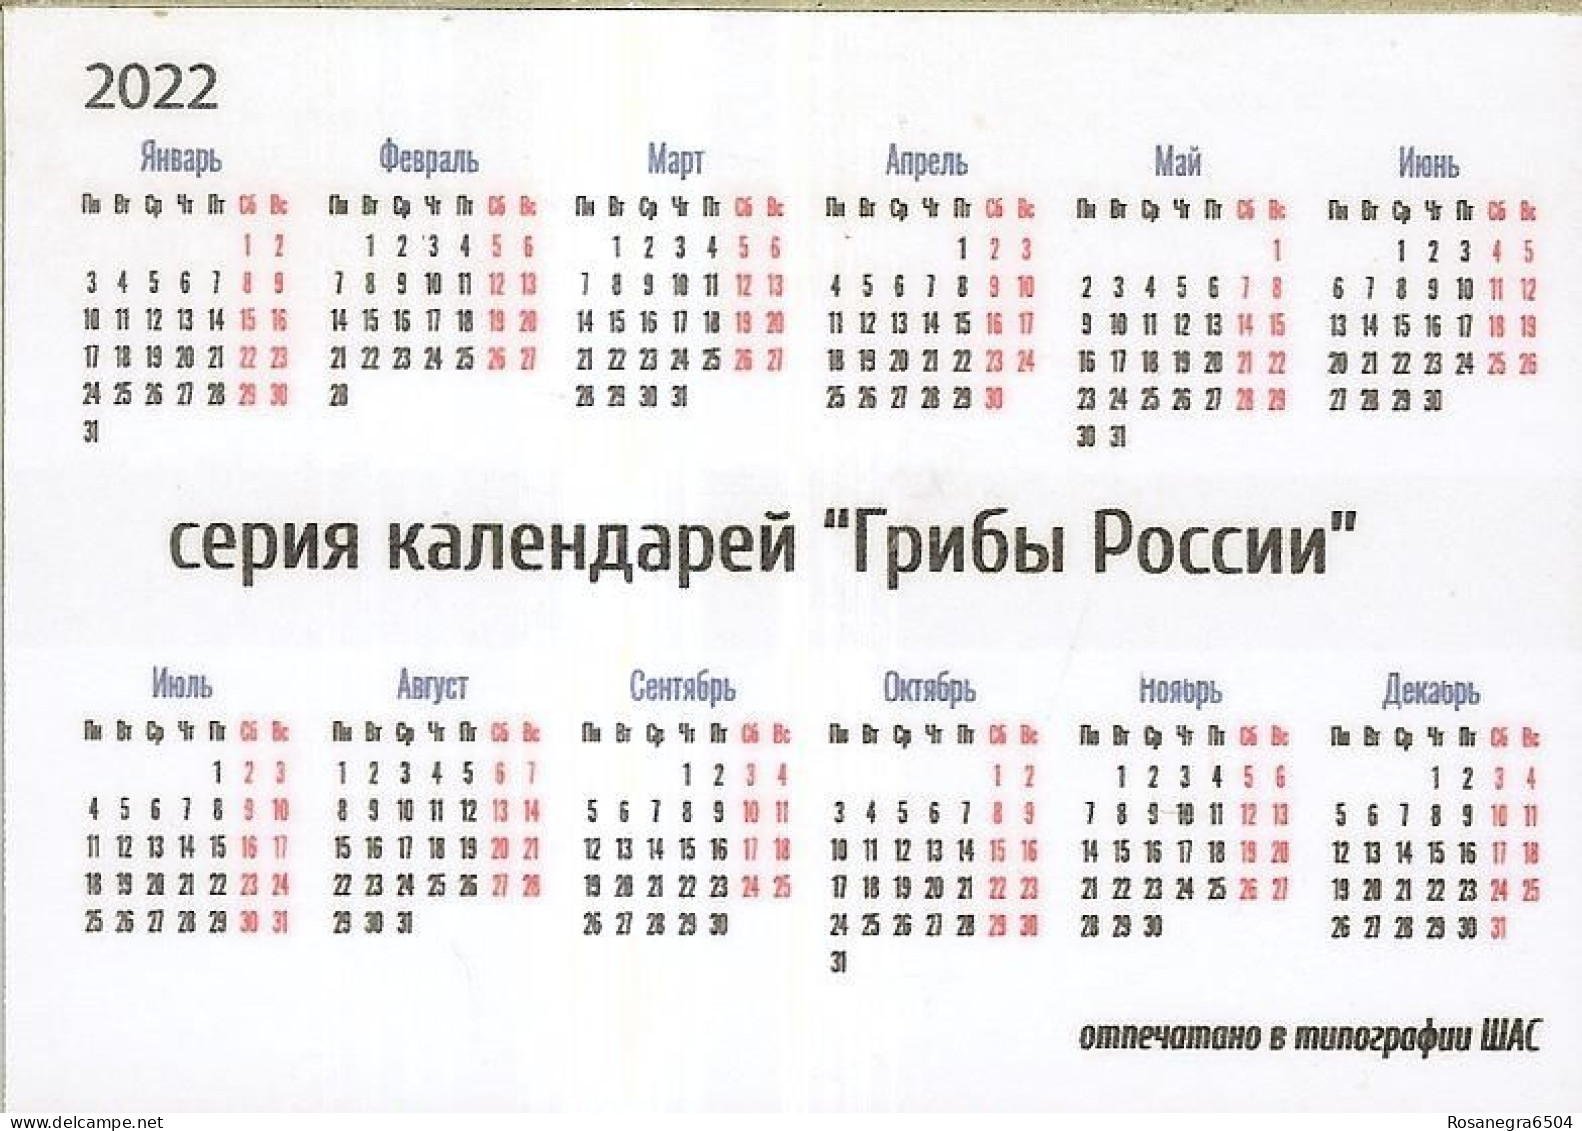 48 RUSSIAN POCKET CALENDARS - YEAR 2022 - MUSHROOMS